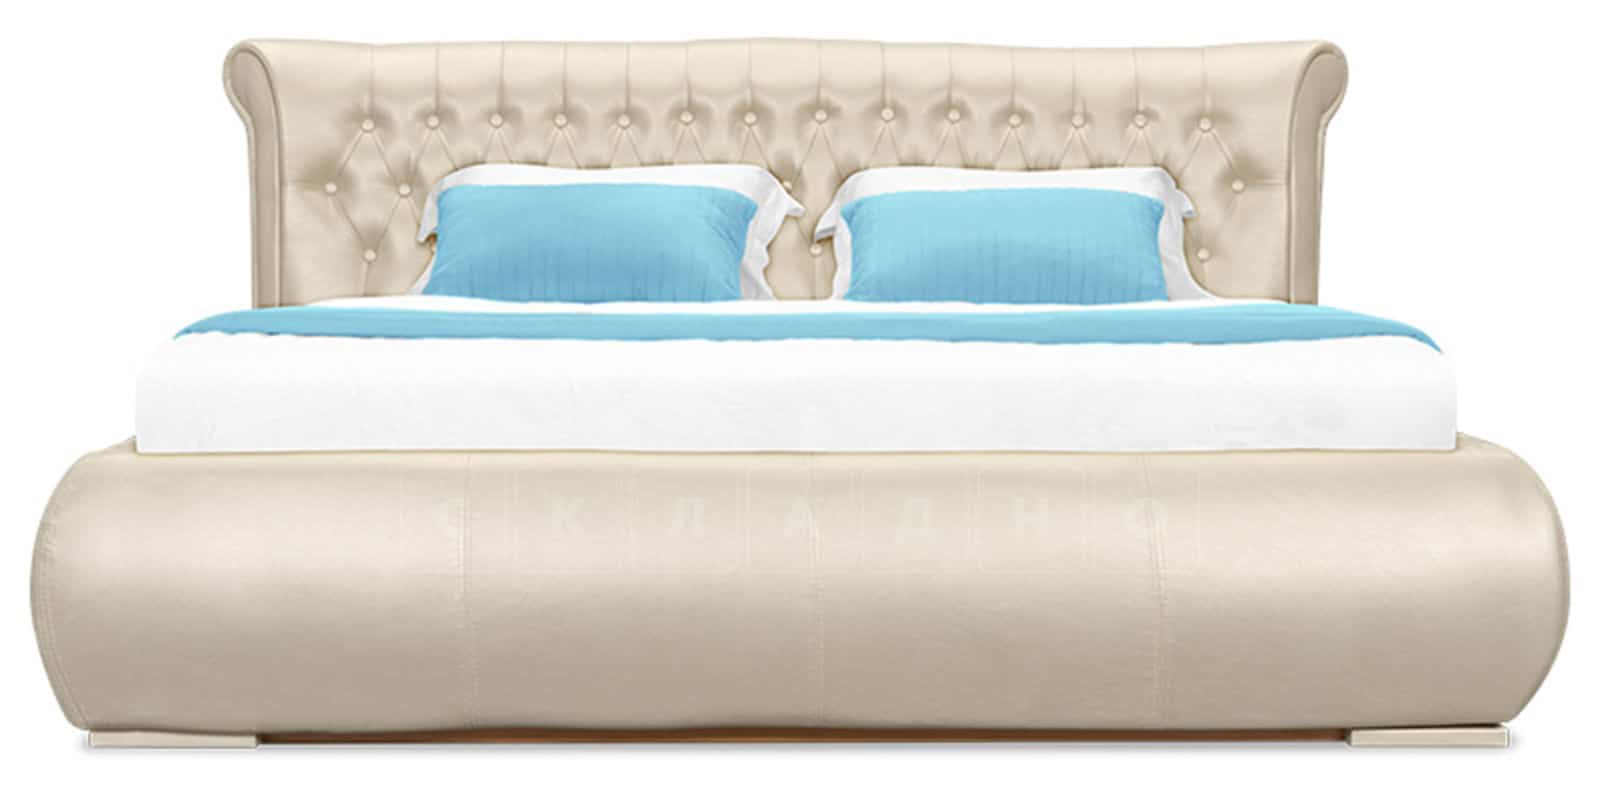 Мягкая кровать Вирджиния 160см экокожа перламутрового цвета фото 3 | интернет-магазин Складно